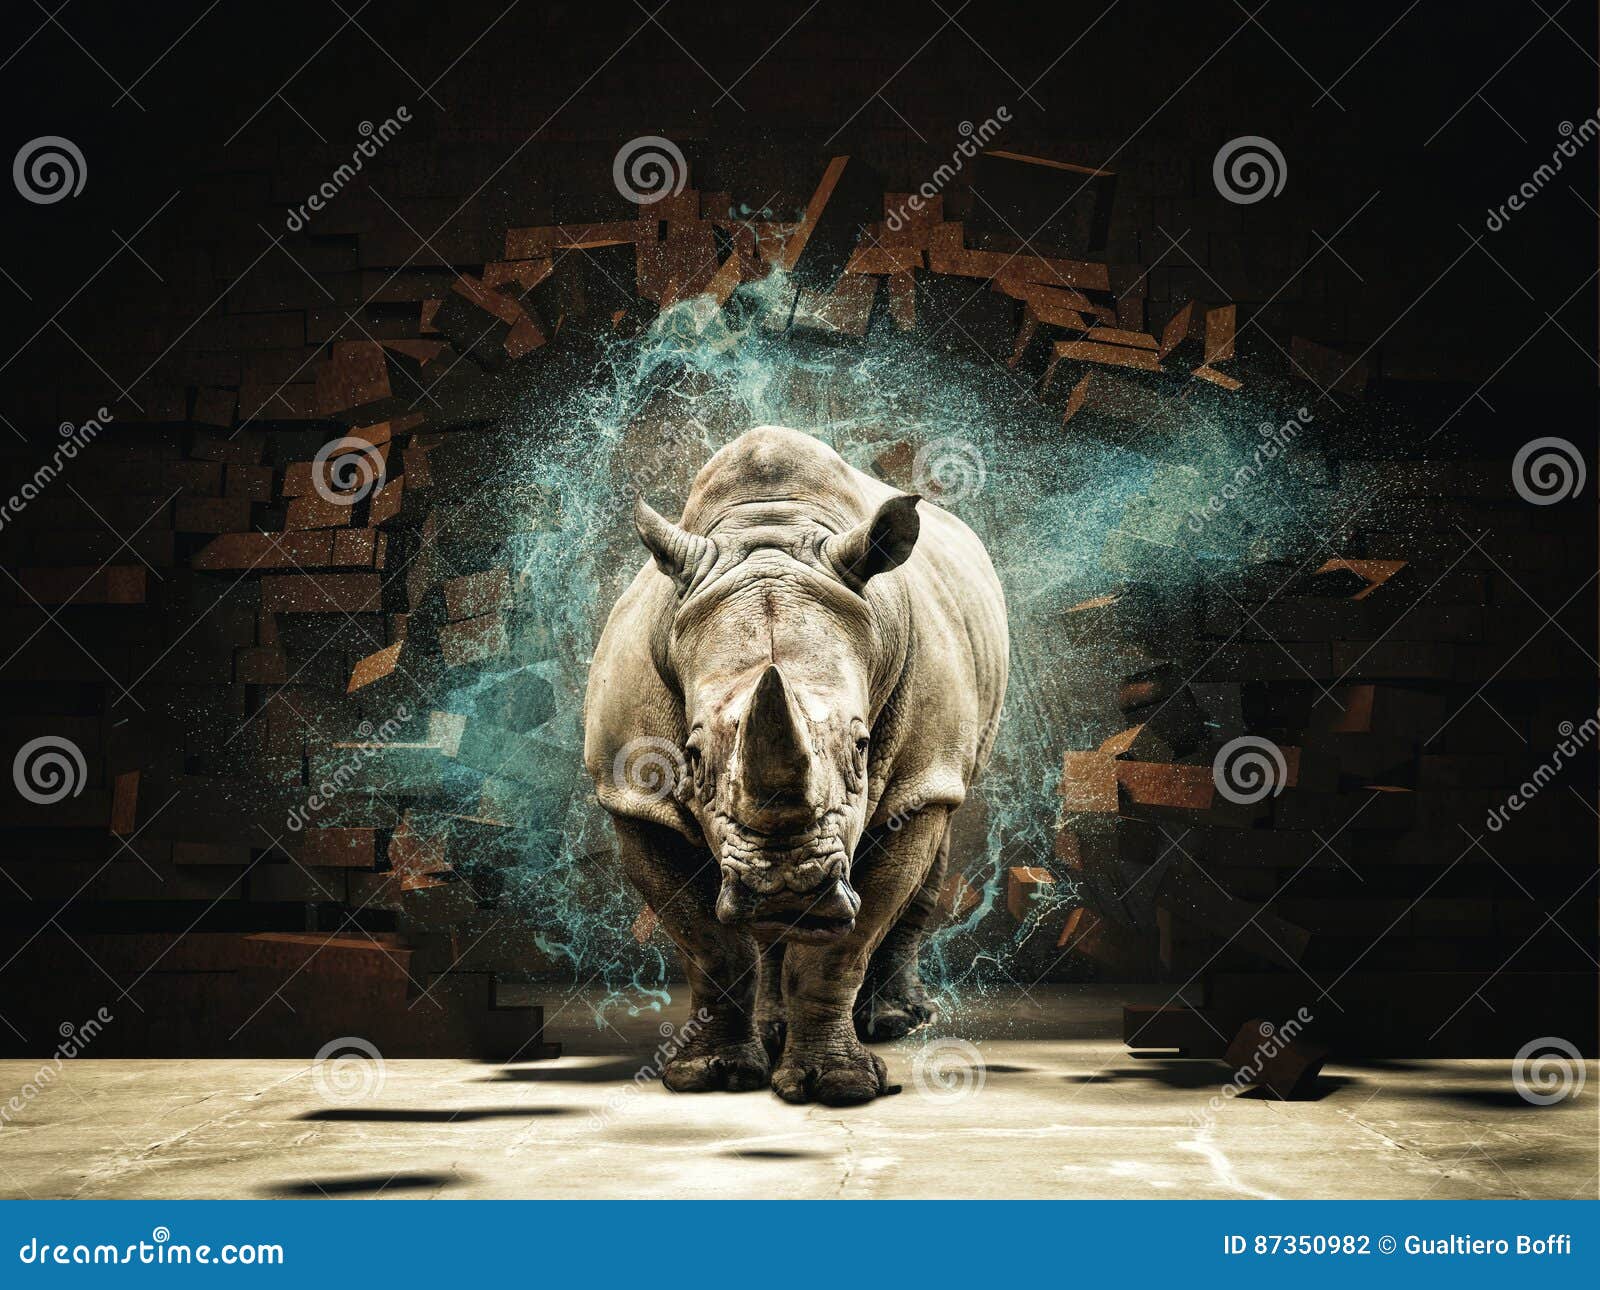 powerfull as rhino